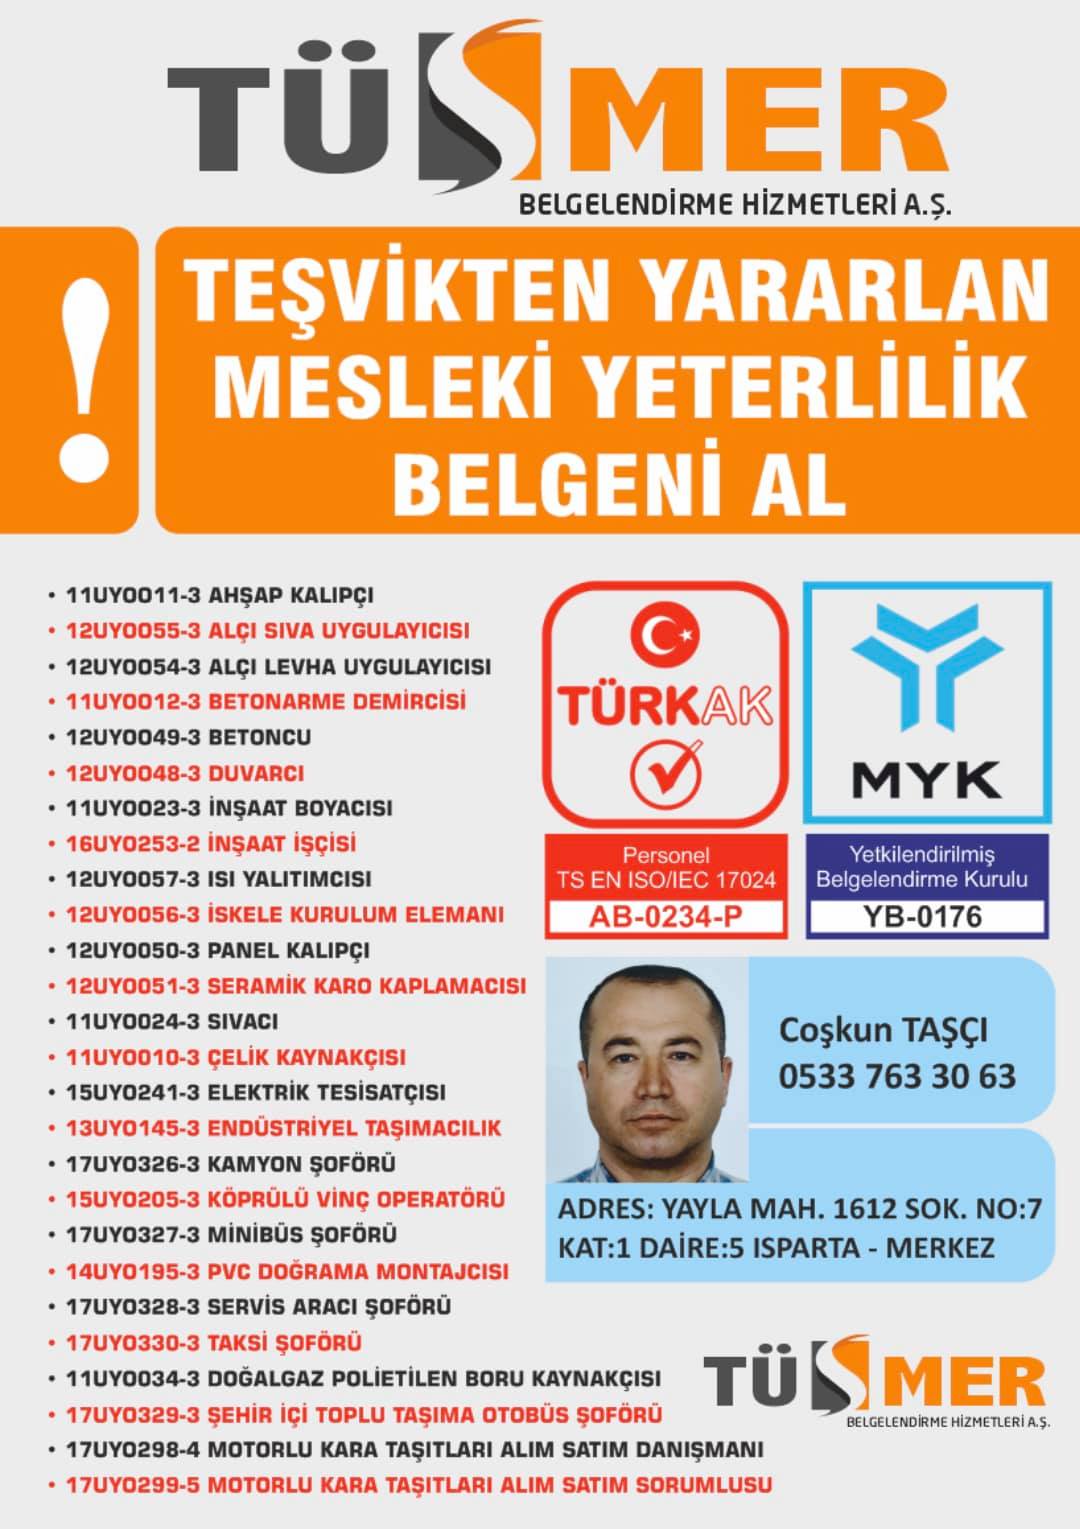 MYK MESLEKİ YETERLİLİK BELGESİ Hürriyet İstanbul